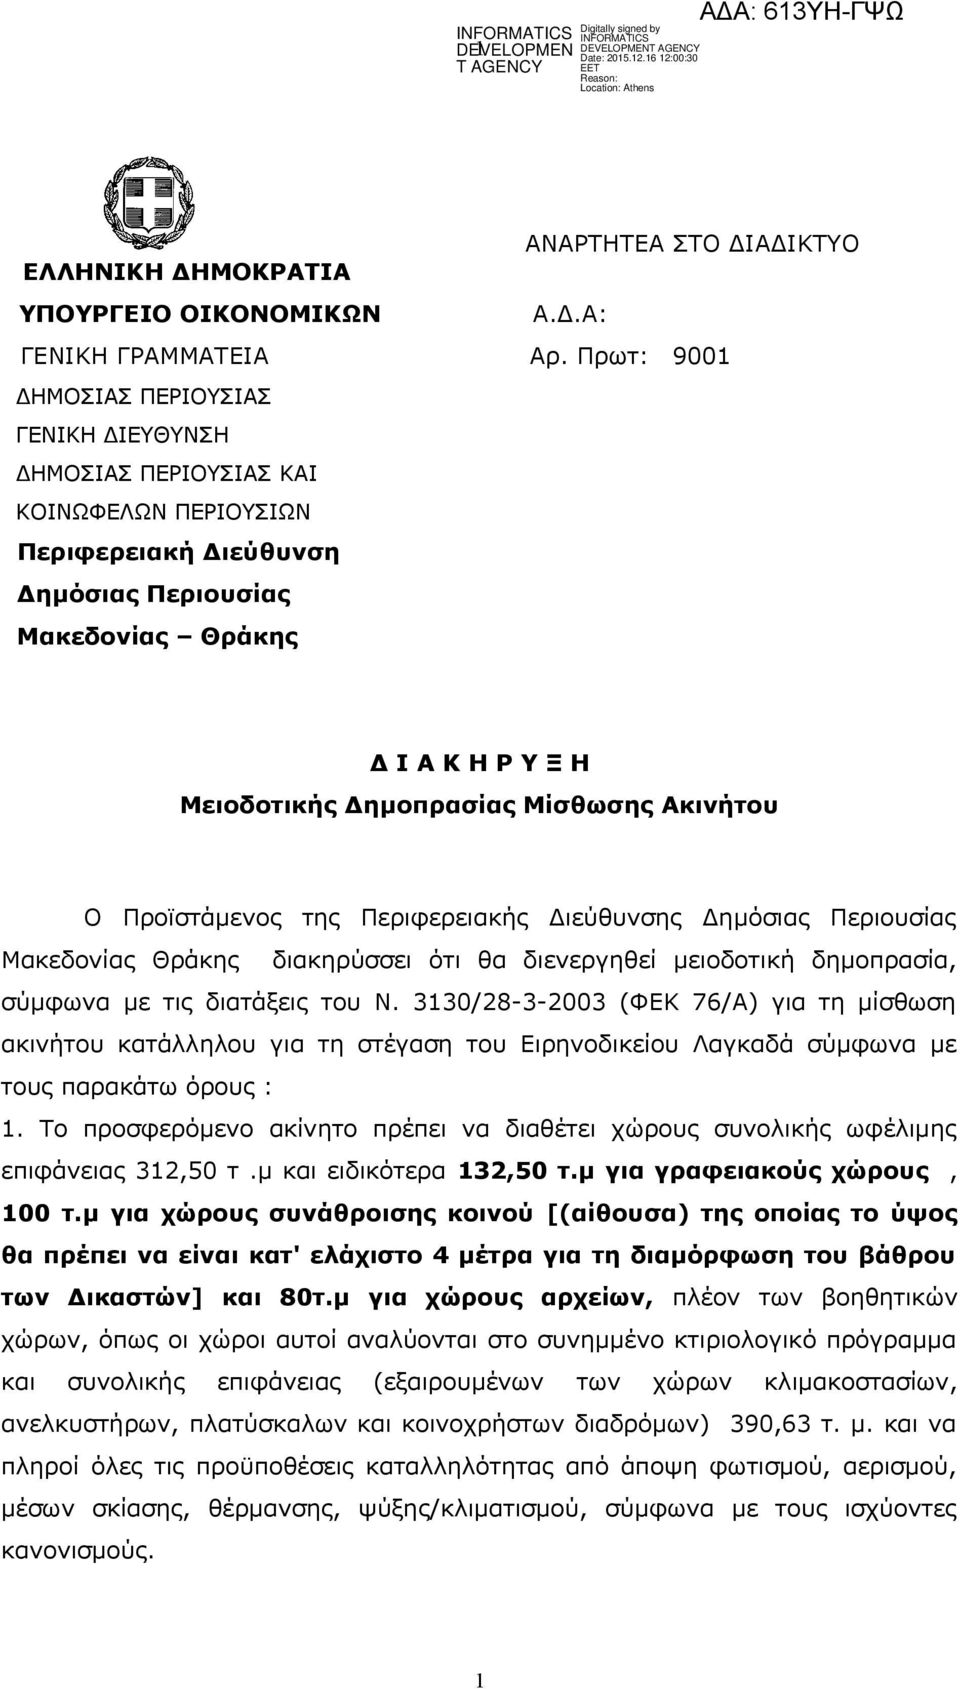 Μίσθωσης Ακινήτου Ο Προϊστάμενος της Περιφερειακής Διεύθυνσης Δημόσιας Περιουσίας Μακεδονίας Θράκης διακηρύσσει ότι θα διενεργηθεί μειοδοτική δημοπρασία, σύμφωνα με τις διατάξεις του Ν.